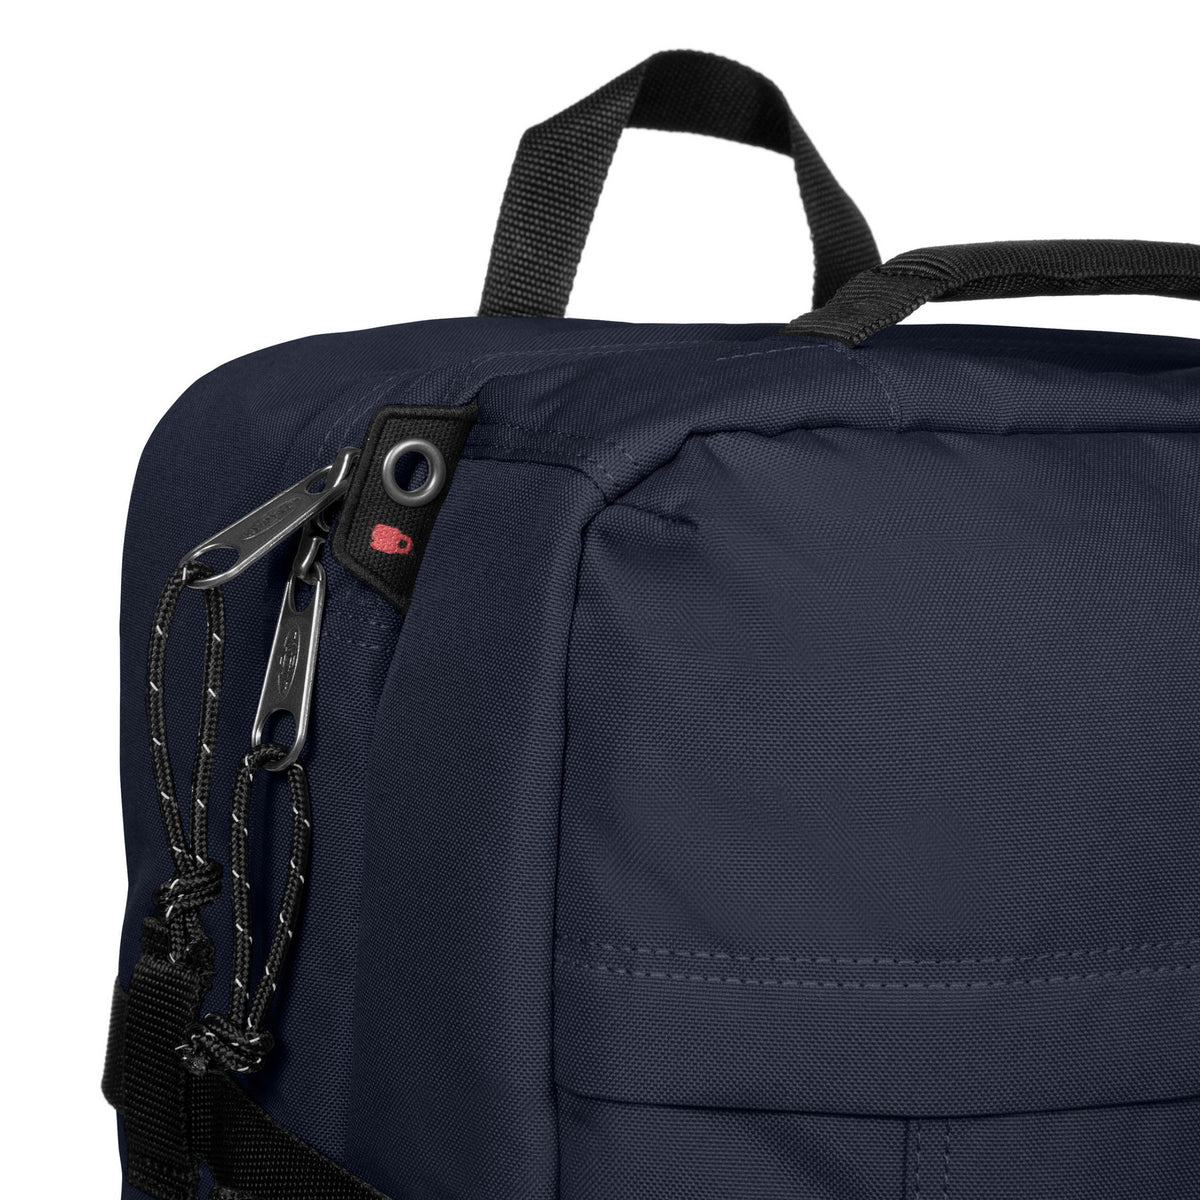 Eastpak Travelpack Backpack - Ultra Marine